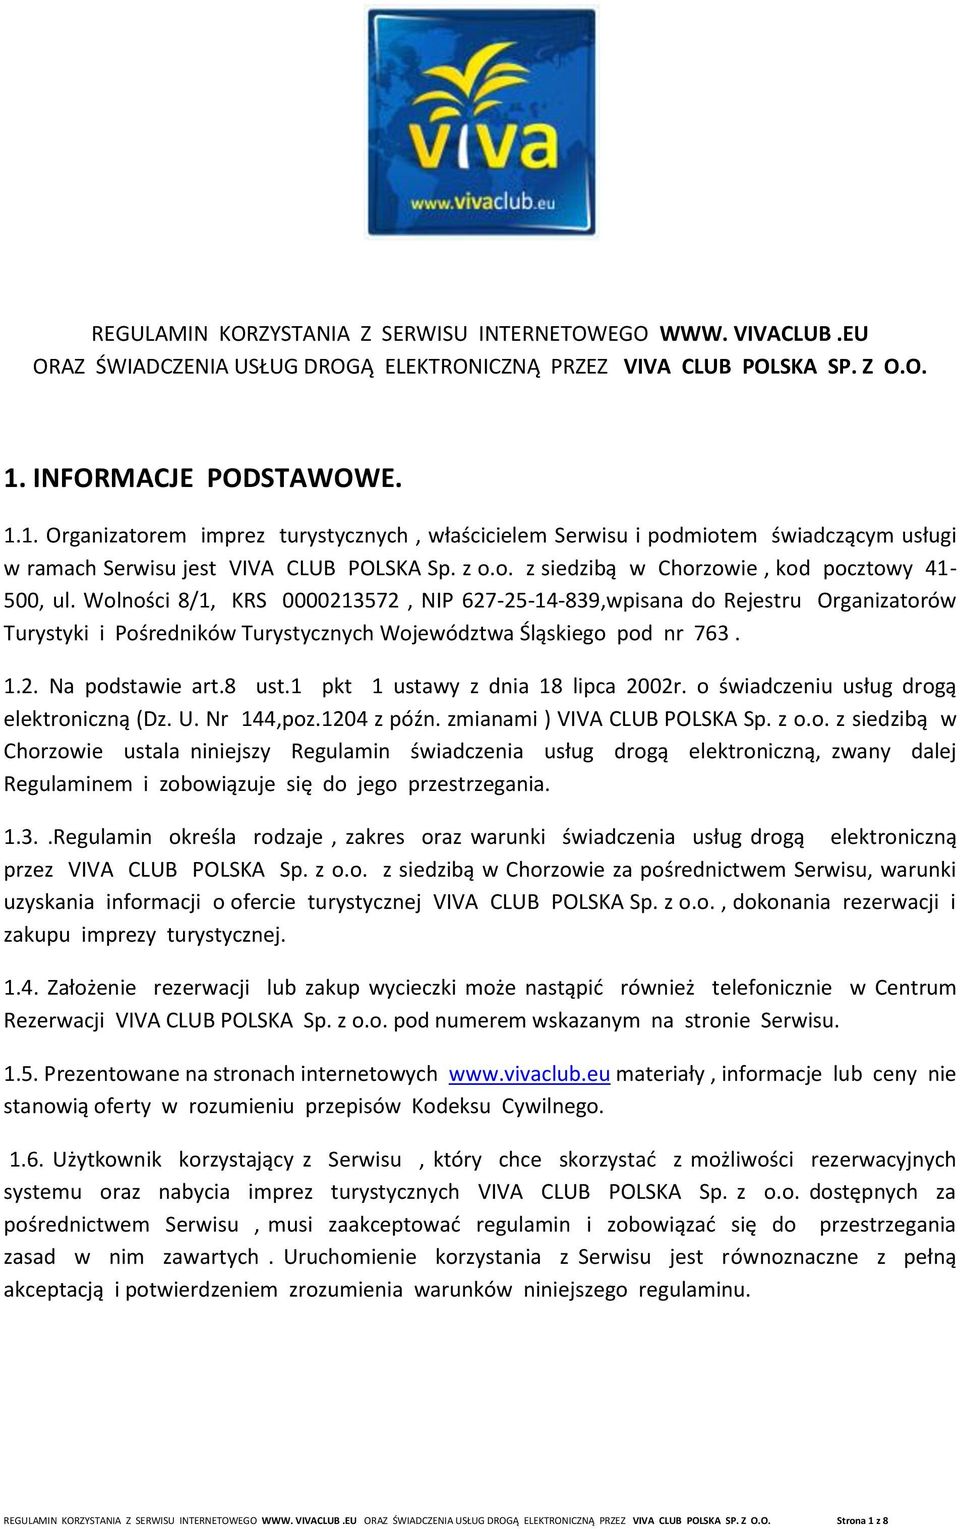 Wolności 8/1, KRS 0000213572, NIP 627-25-14-839,wpisana do Rejestru Organizatorów Turystyki i Pośredników Turystycznych Województwa Śląskiego pod nr 763. 1.2. Na podstawie art.8 ust.